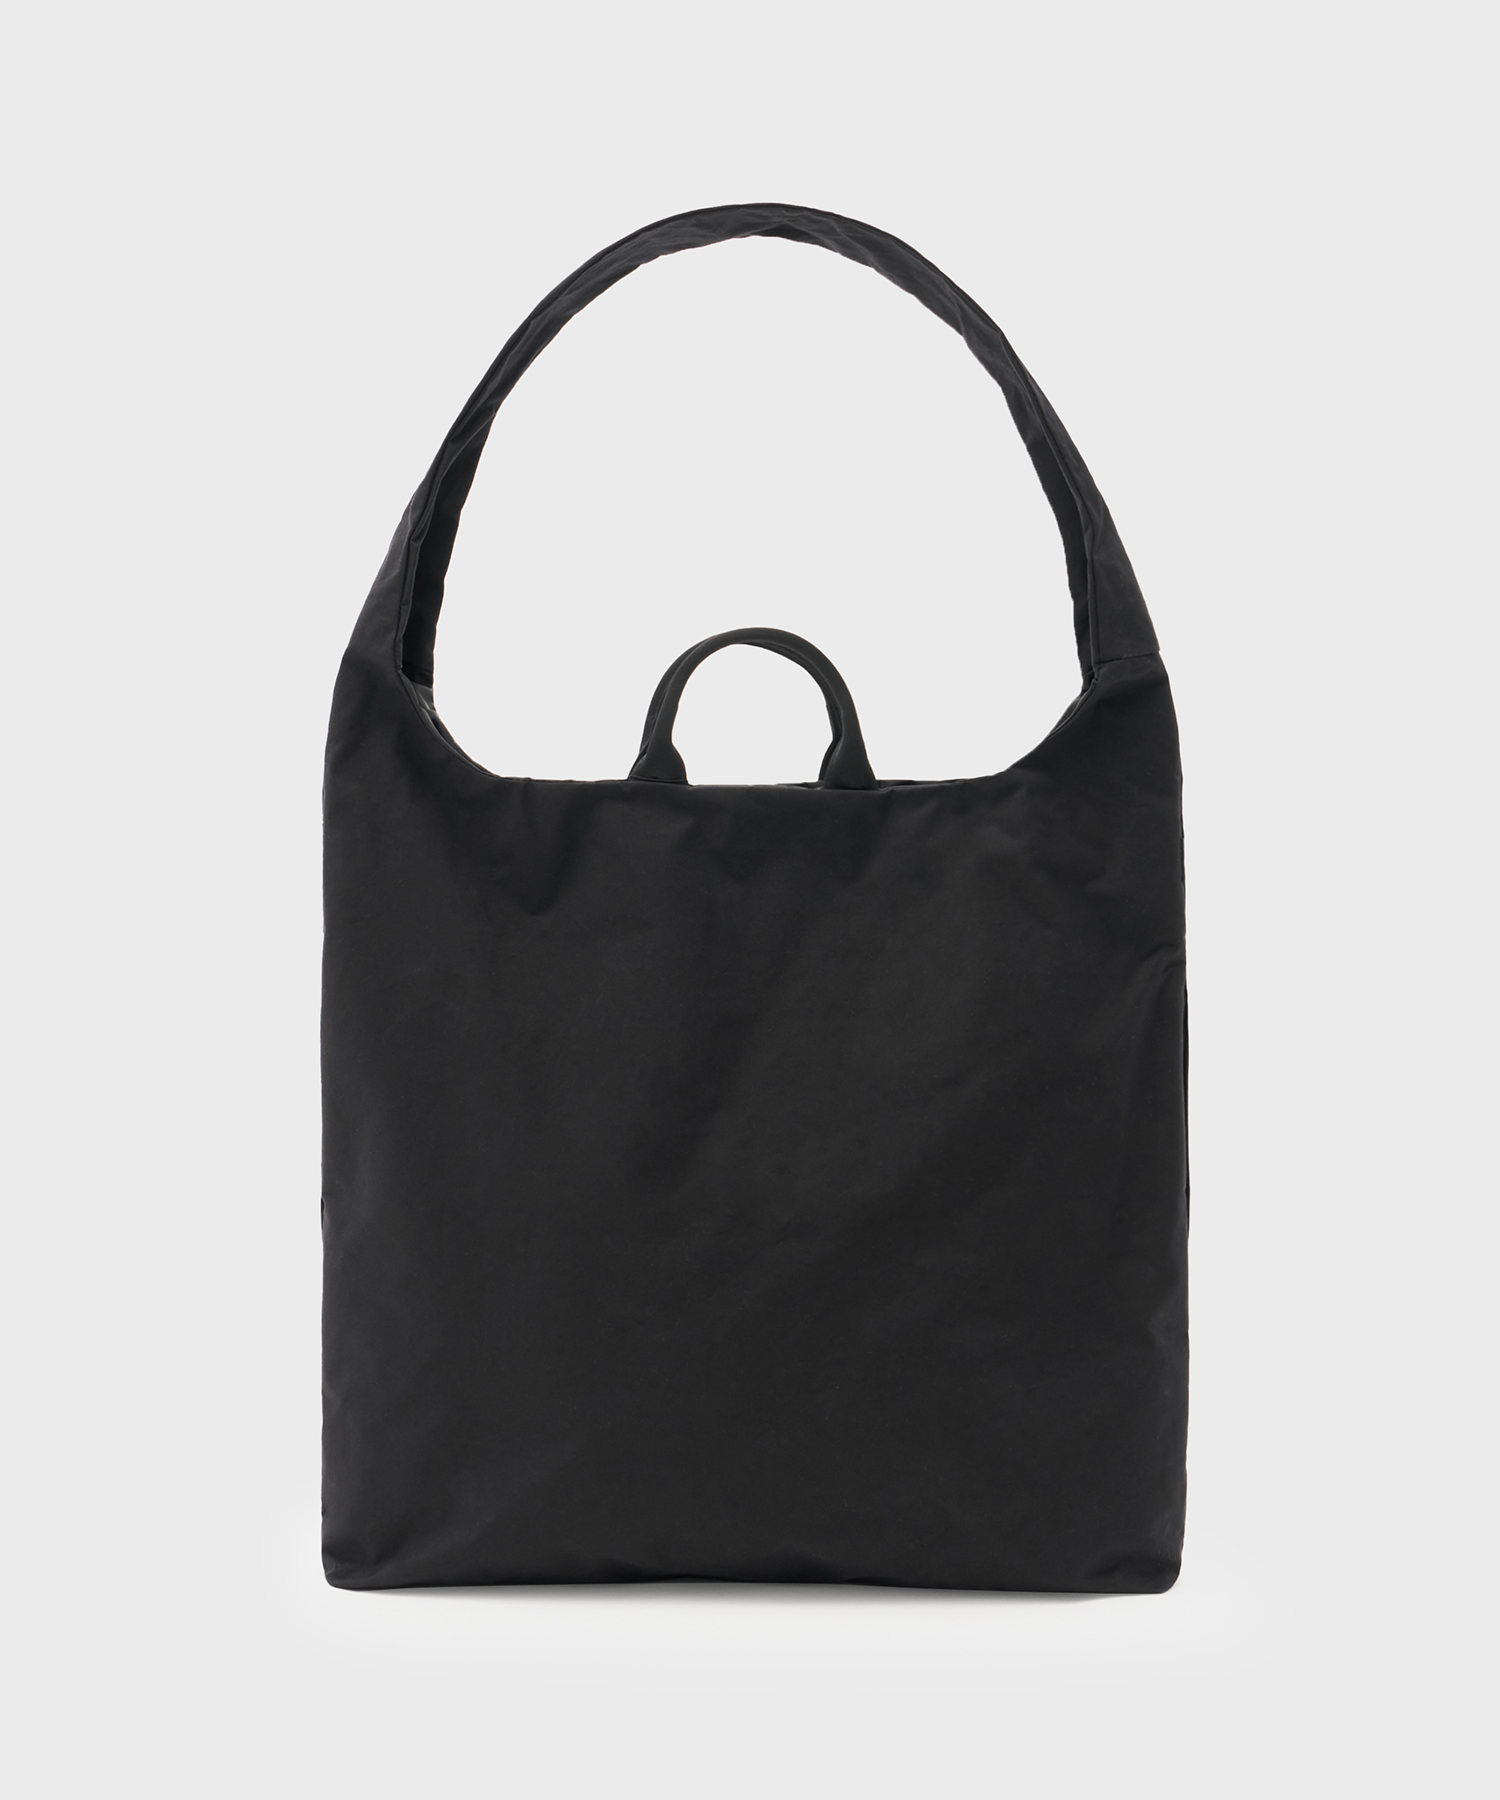 Juddo Shoulder Bag (Black)